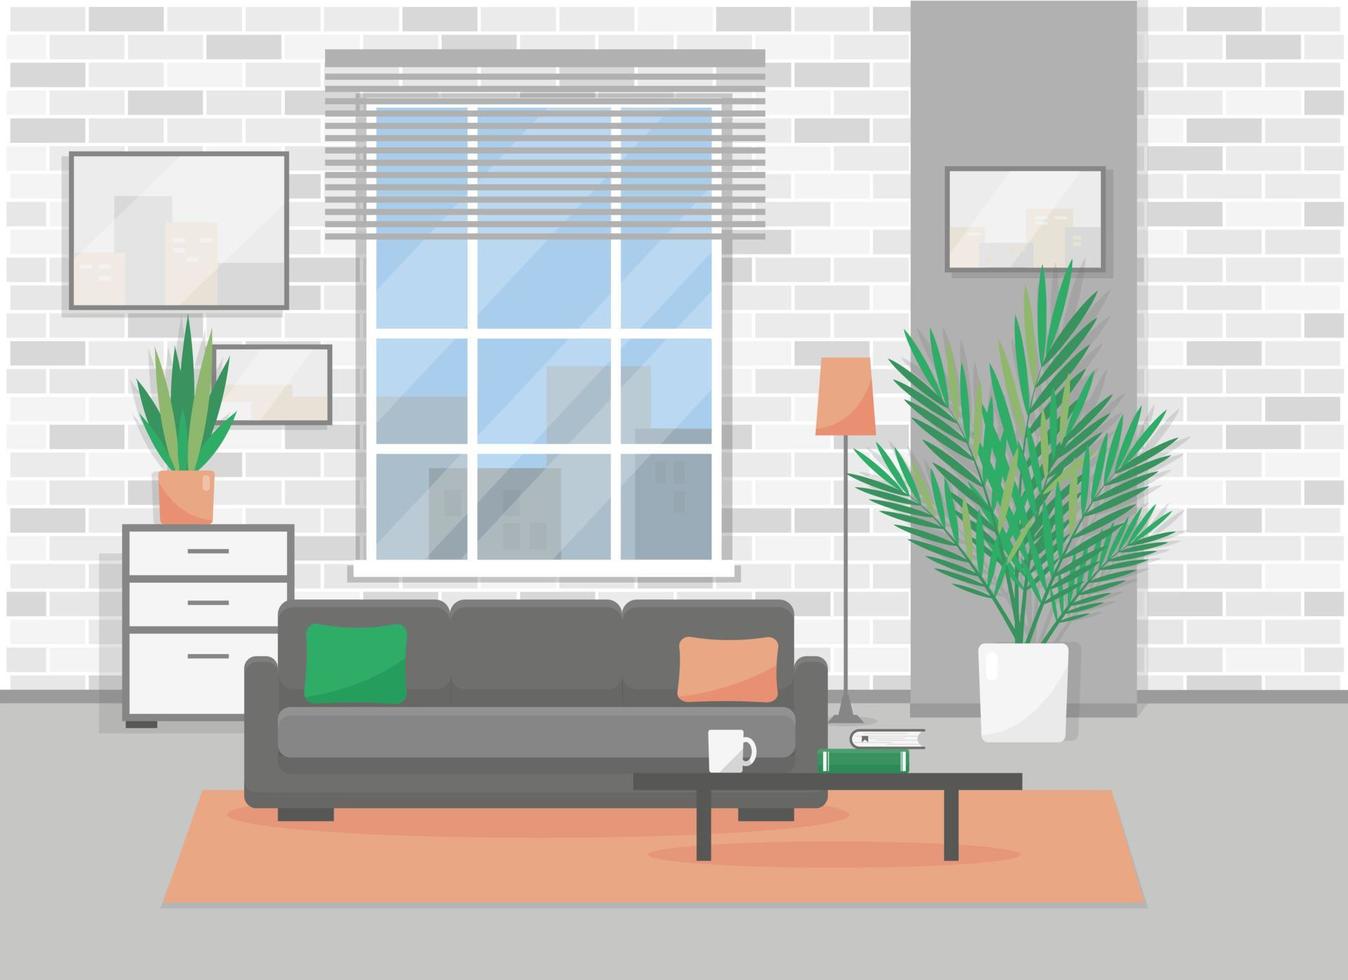 levande rum interiör i modern loft stil. lägenhet med fönster och möbel. platt vektor illustration.